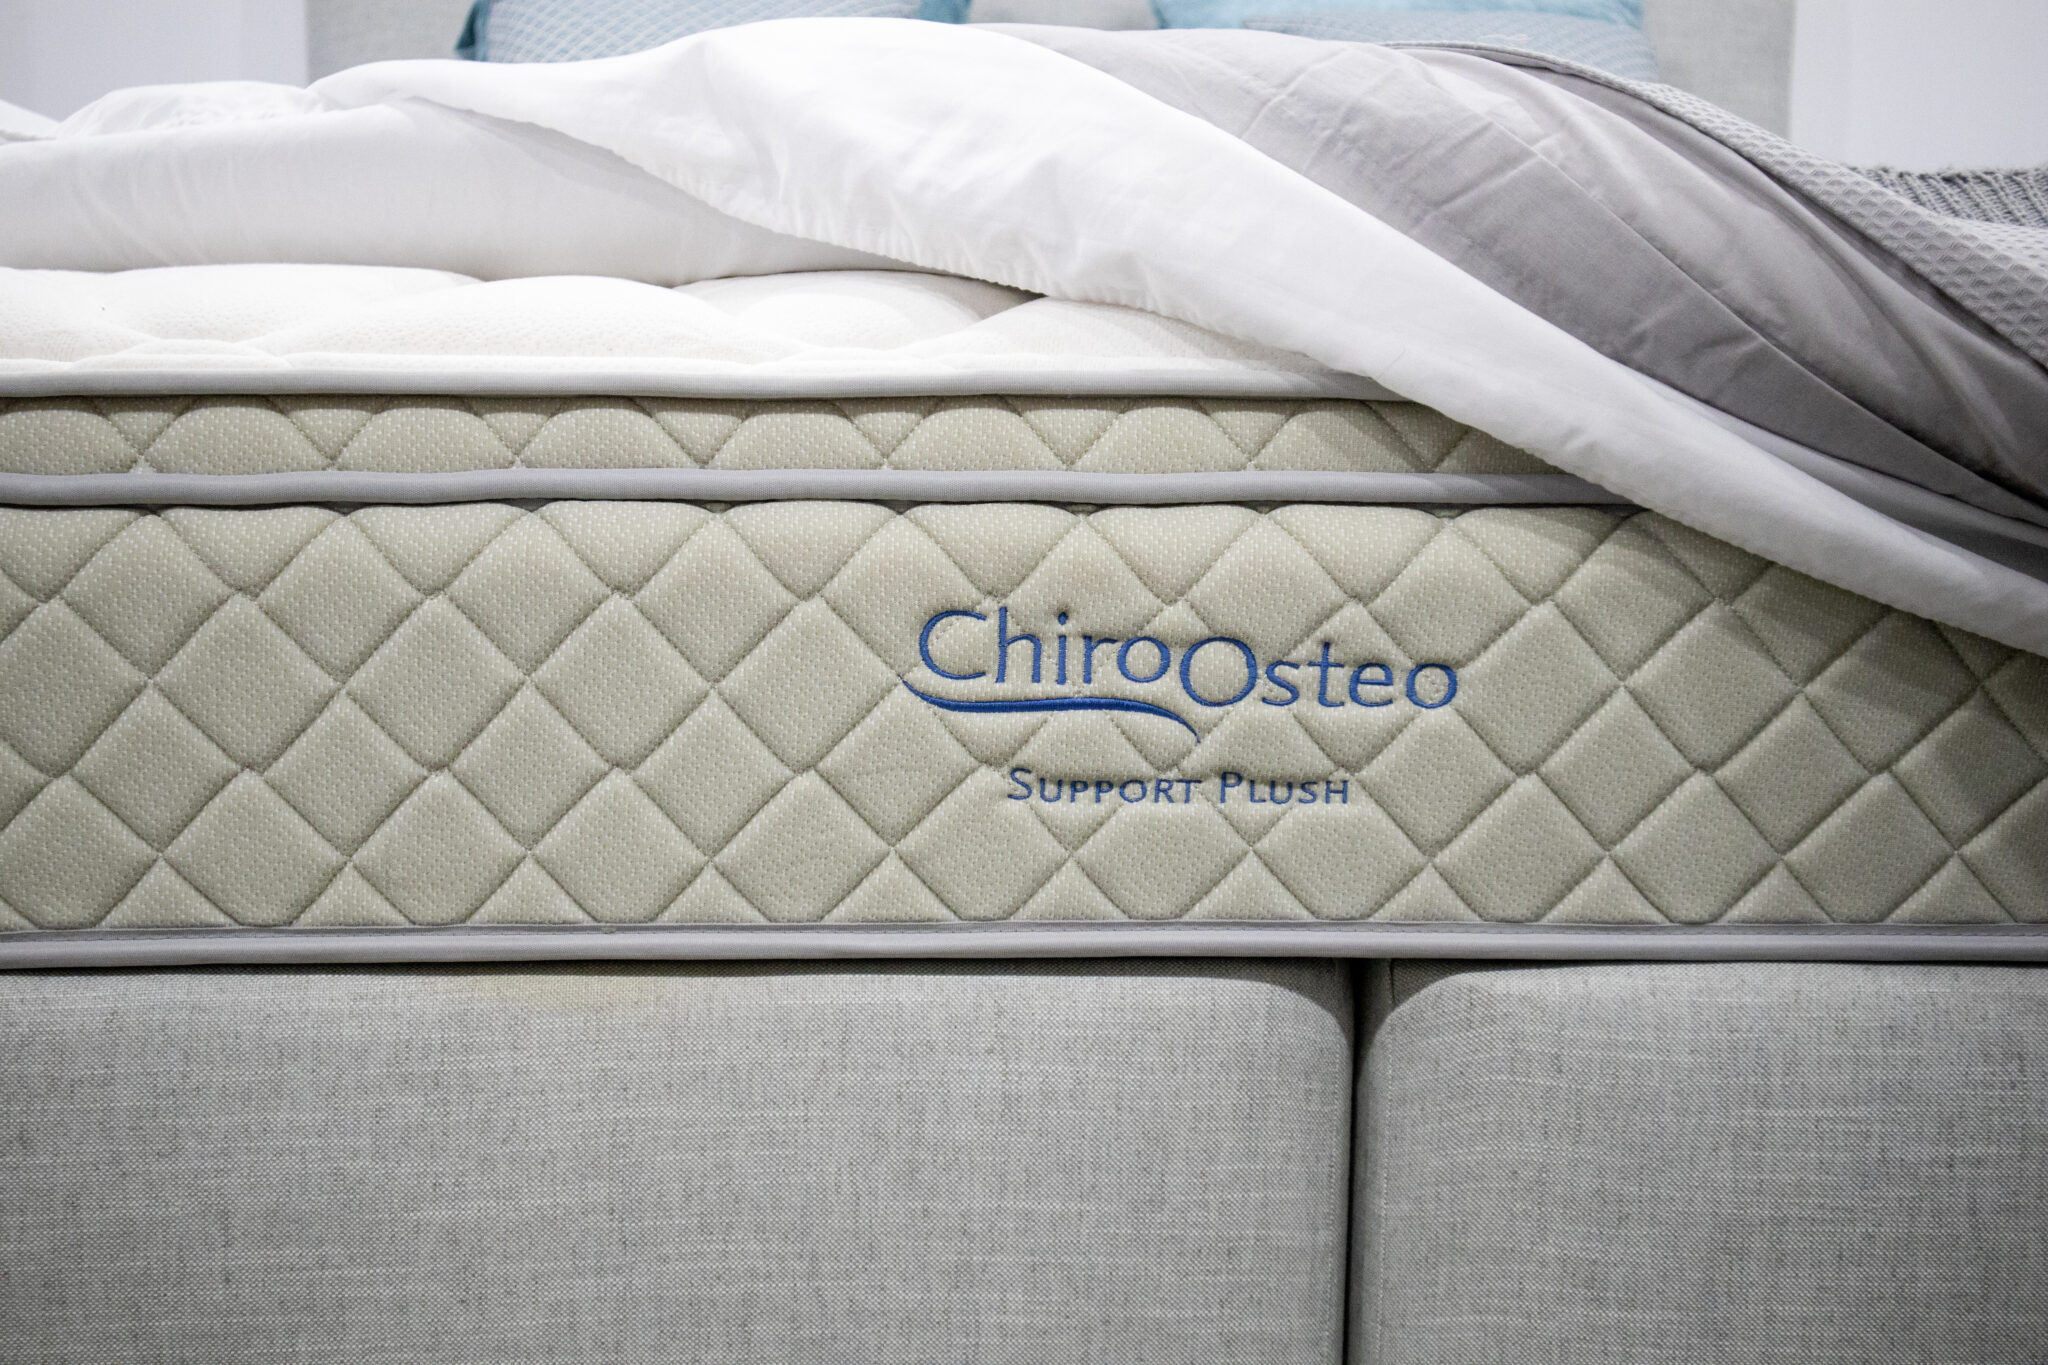 chiro-osteo plush mattress